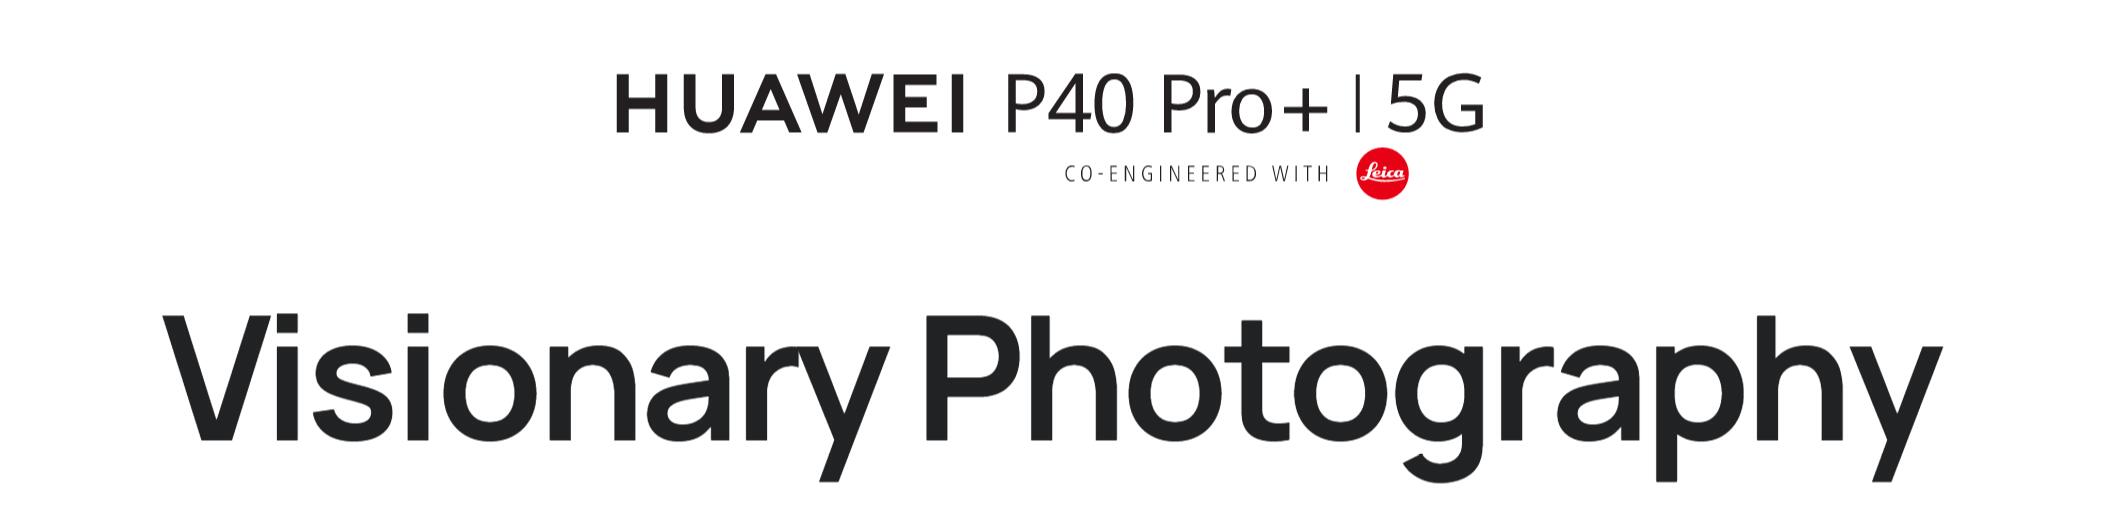 Huawei-P40-Pro-Plus-00.jpg